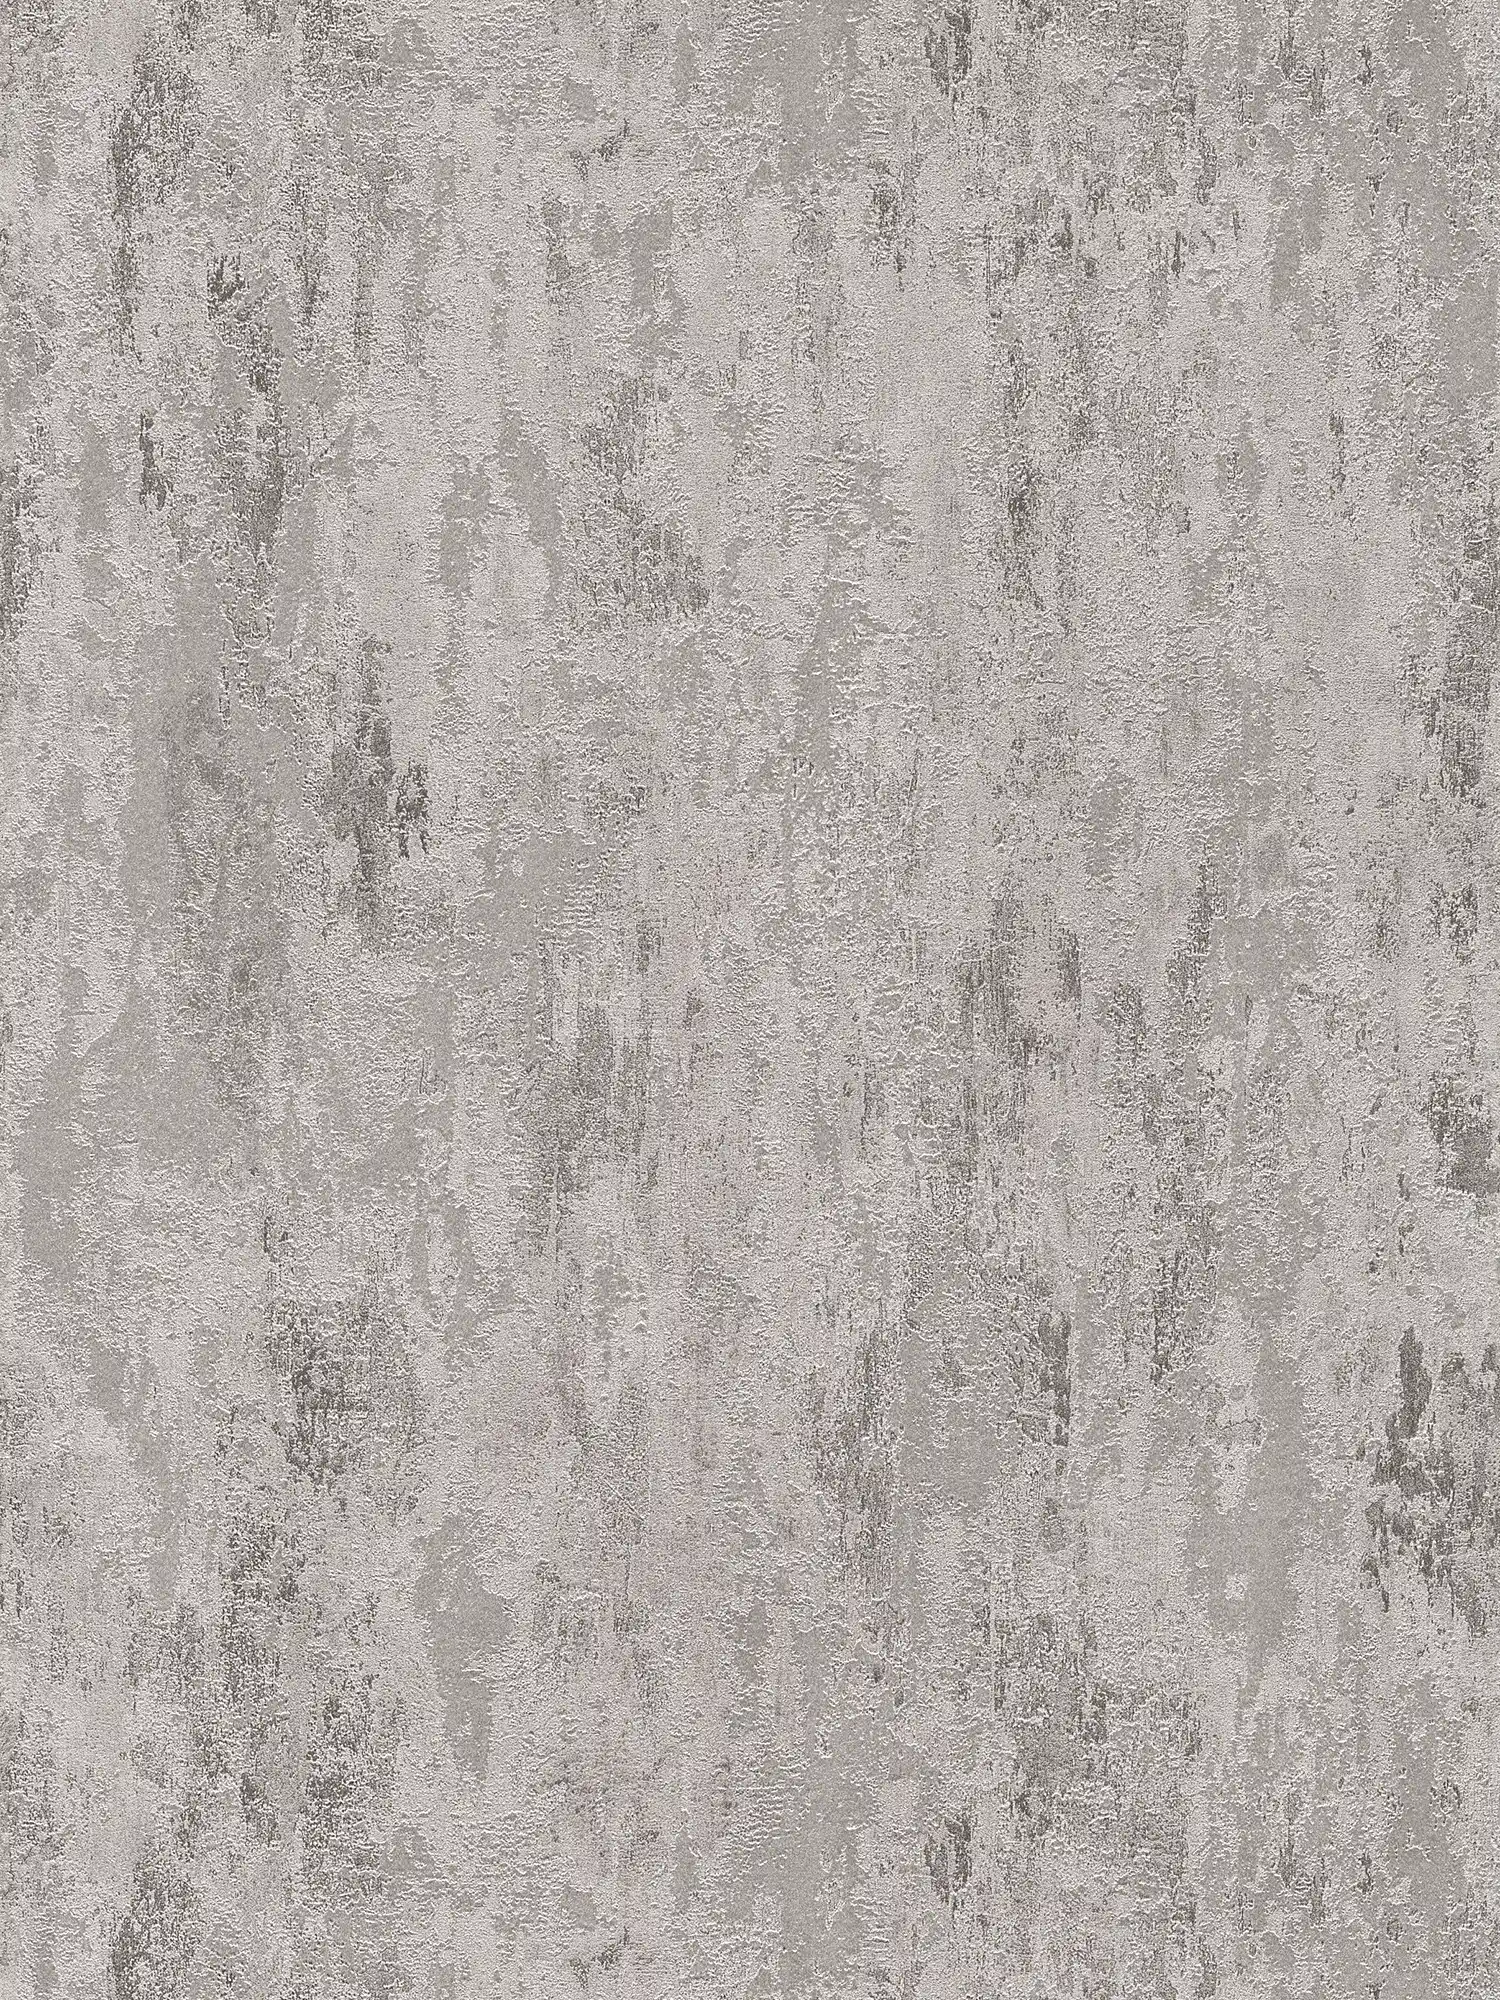 Carta da parati in tessuto non tessuto ruggine con motivo strutturato - grigio, argento
